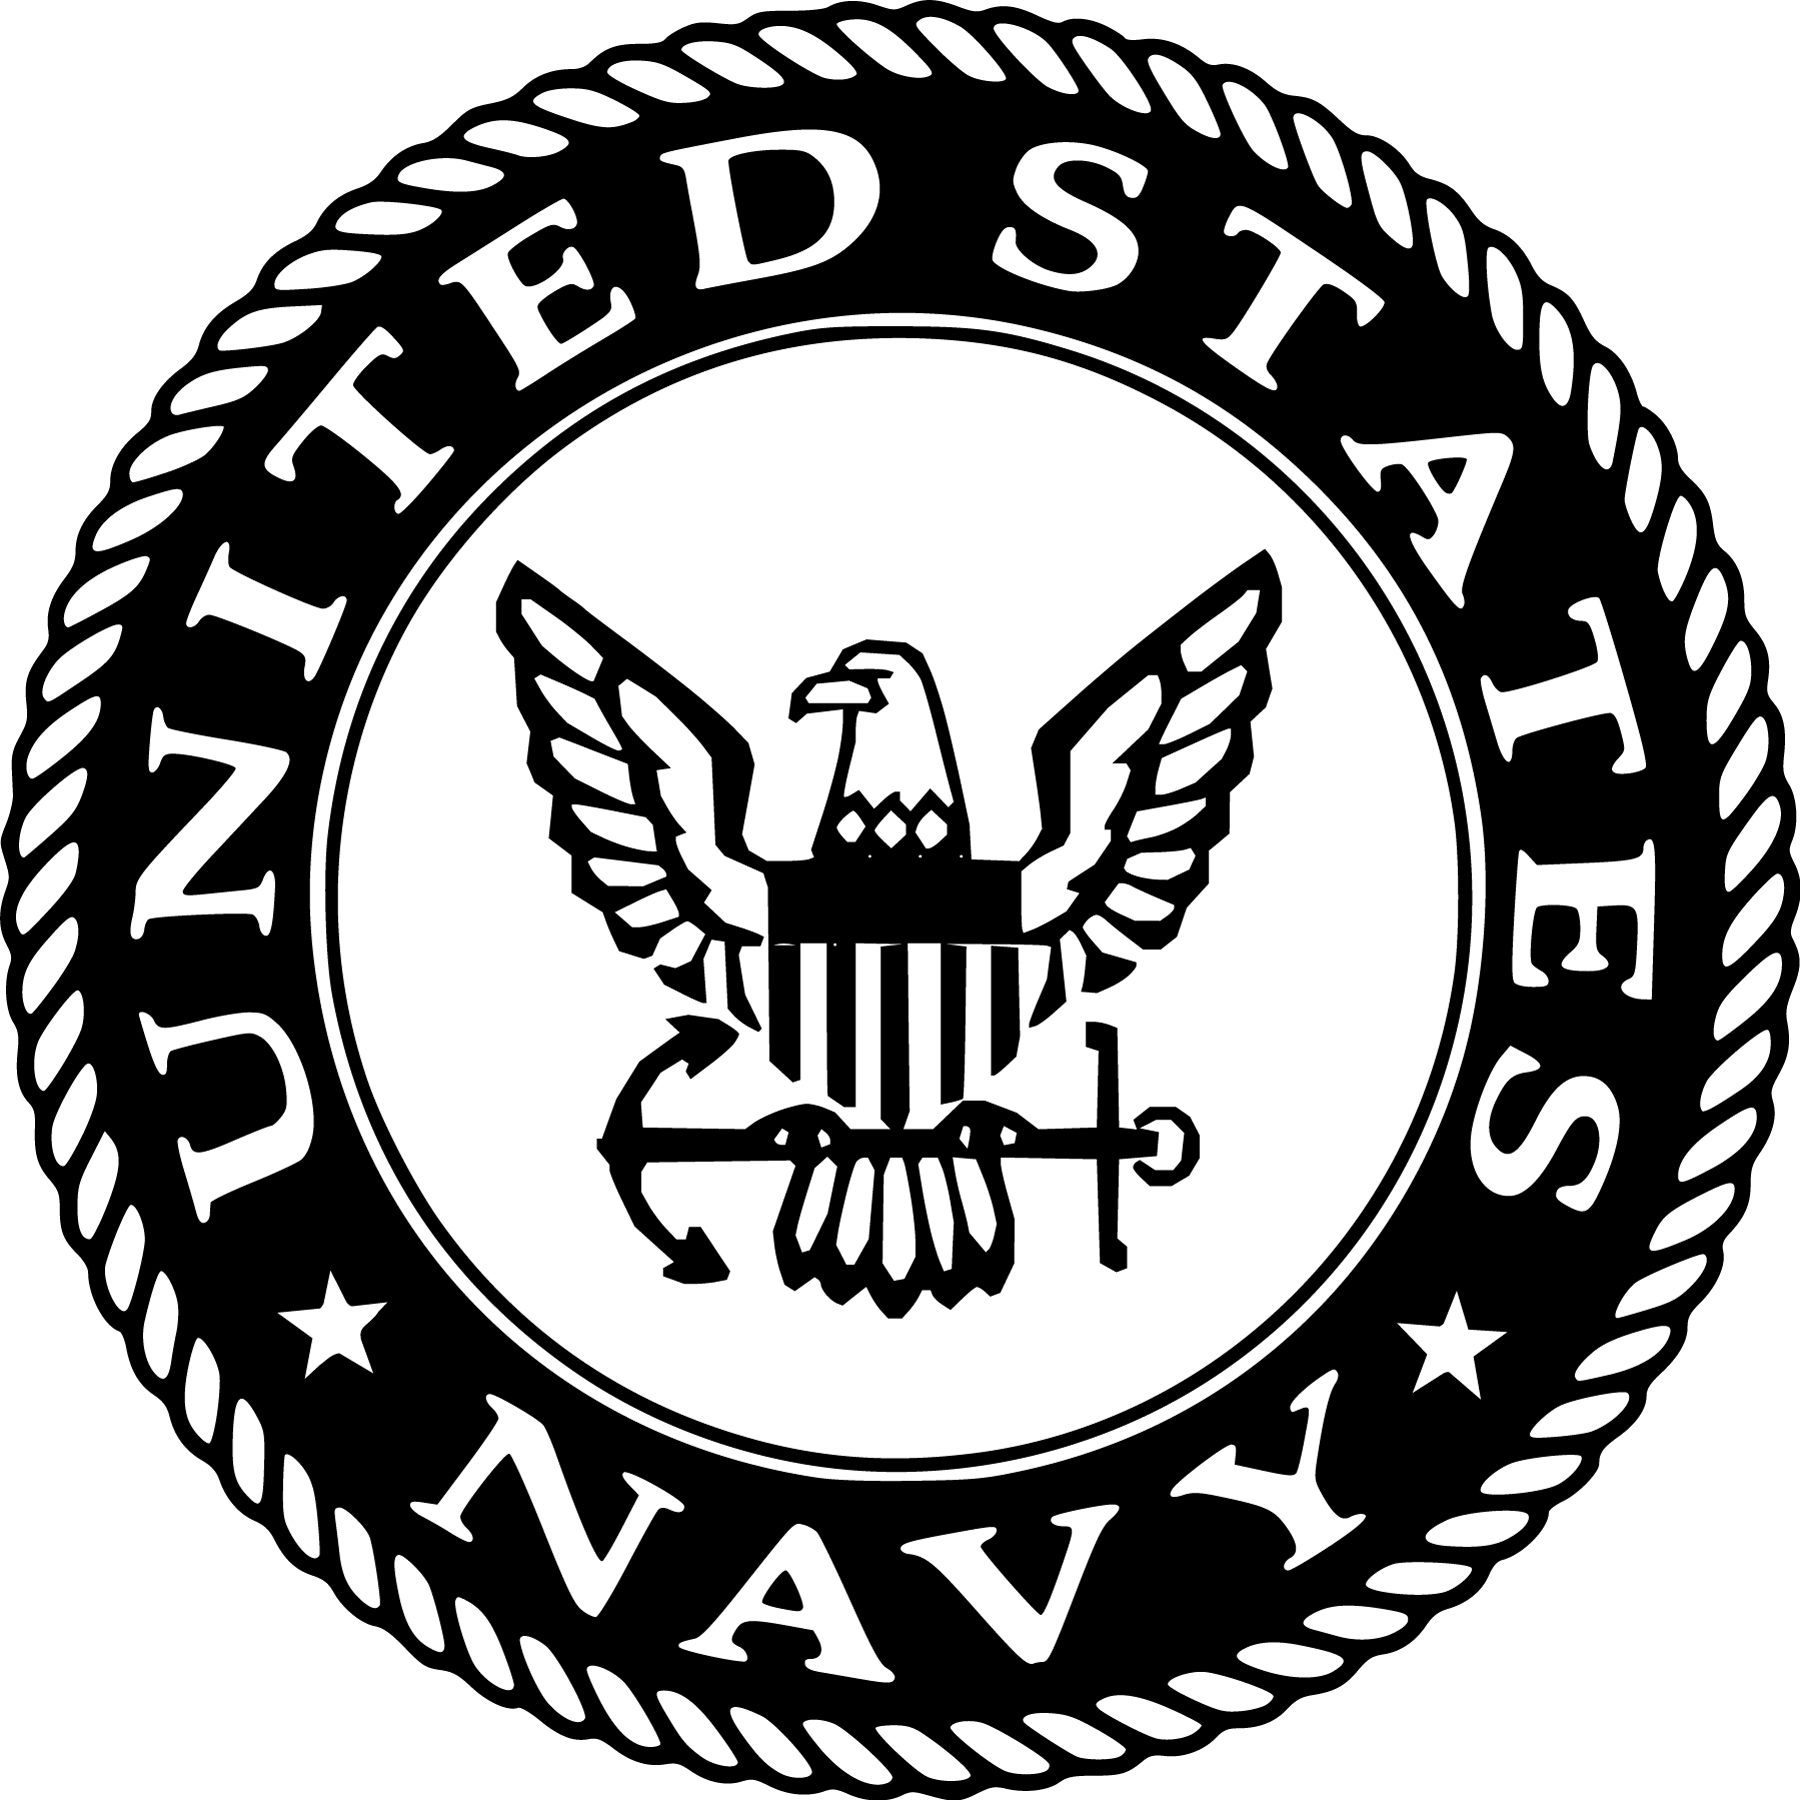 Us Navy Logo | Viralnova